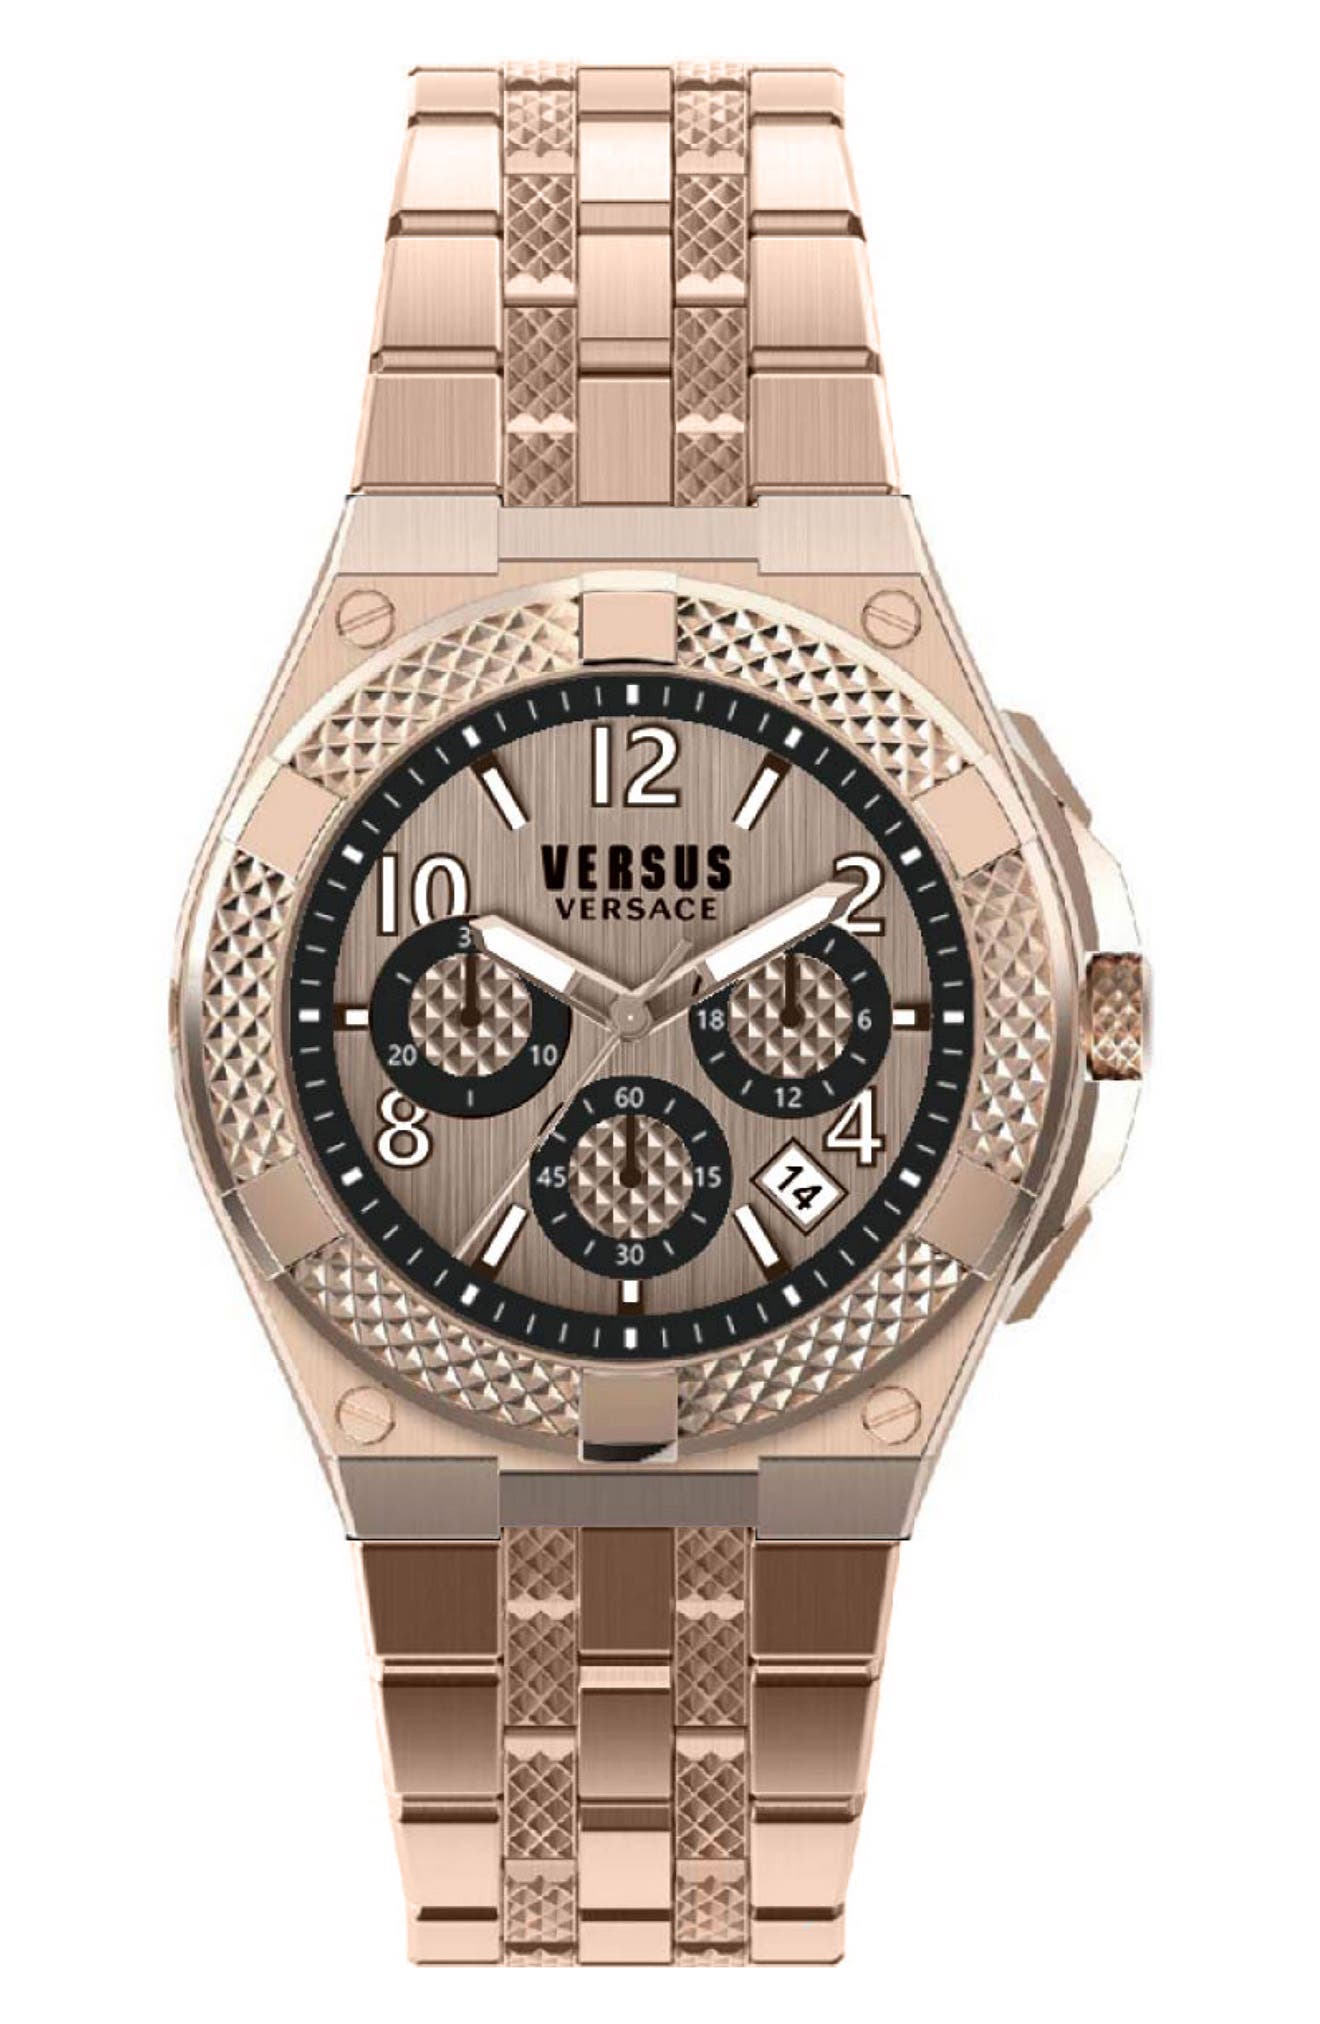 Мужские часы Esteve из нержавеющей стали с циферблатом из розового золота, 46 мм Versus Versace